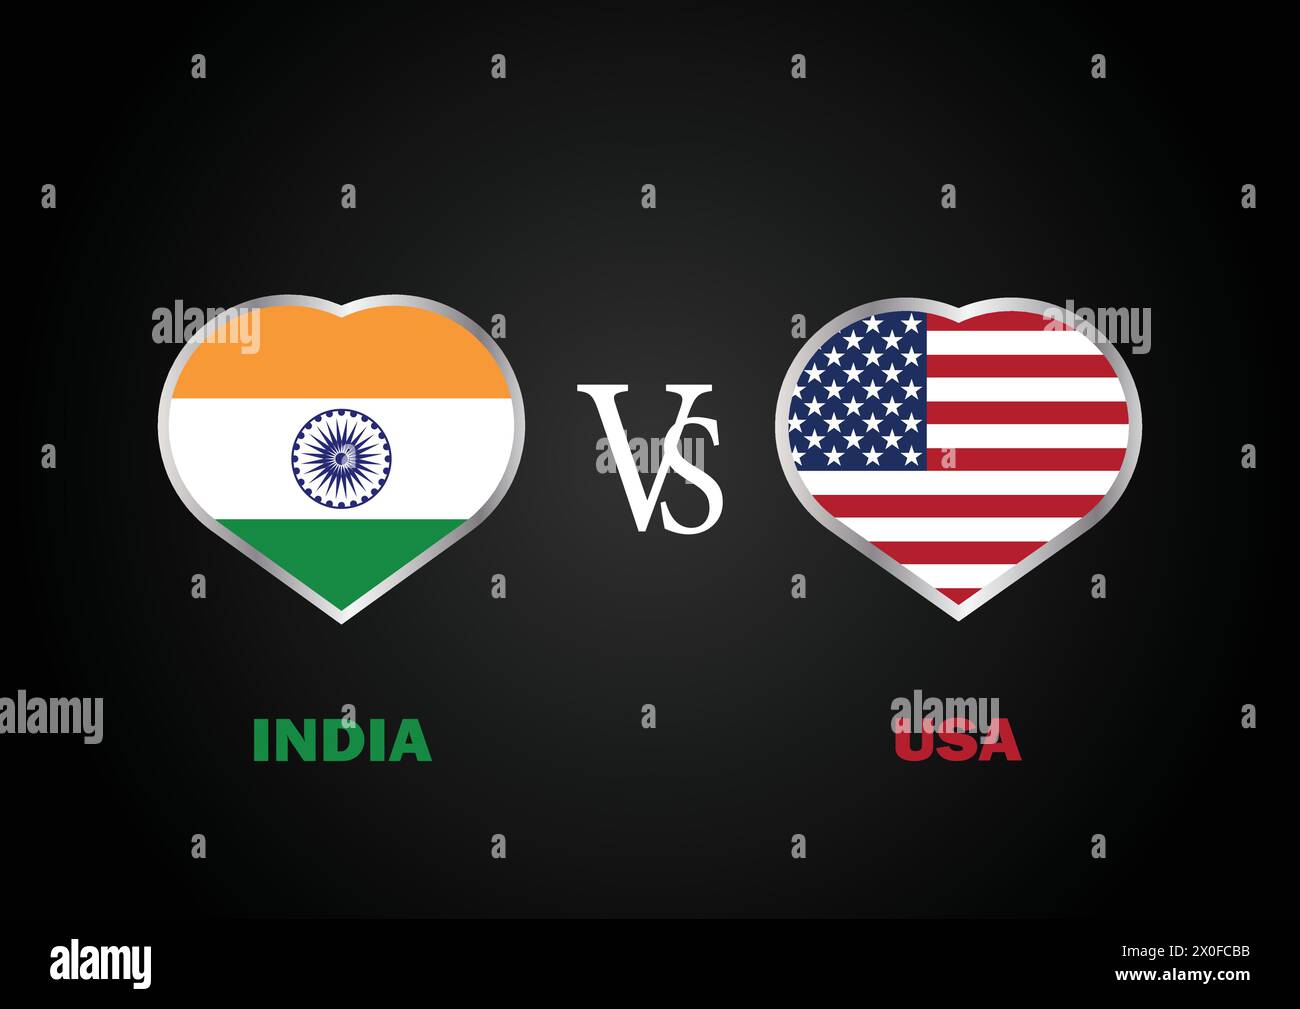 Inde vs USA, concept de match de cricket avec illustration créative du drapeau des pays participants Batsman et Hearts isolés sur fond noir Illustration de Vecteur